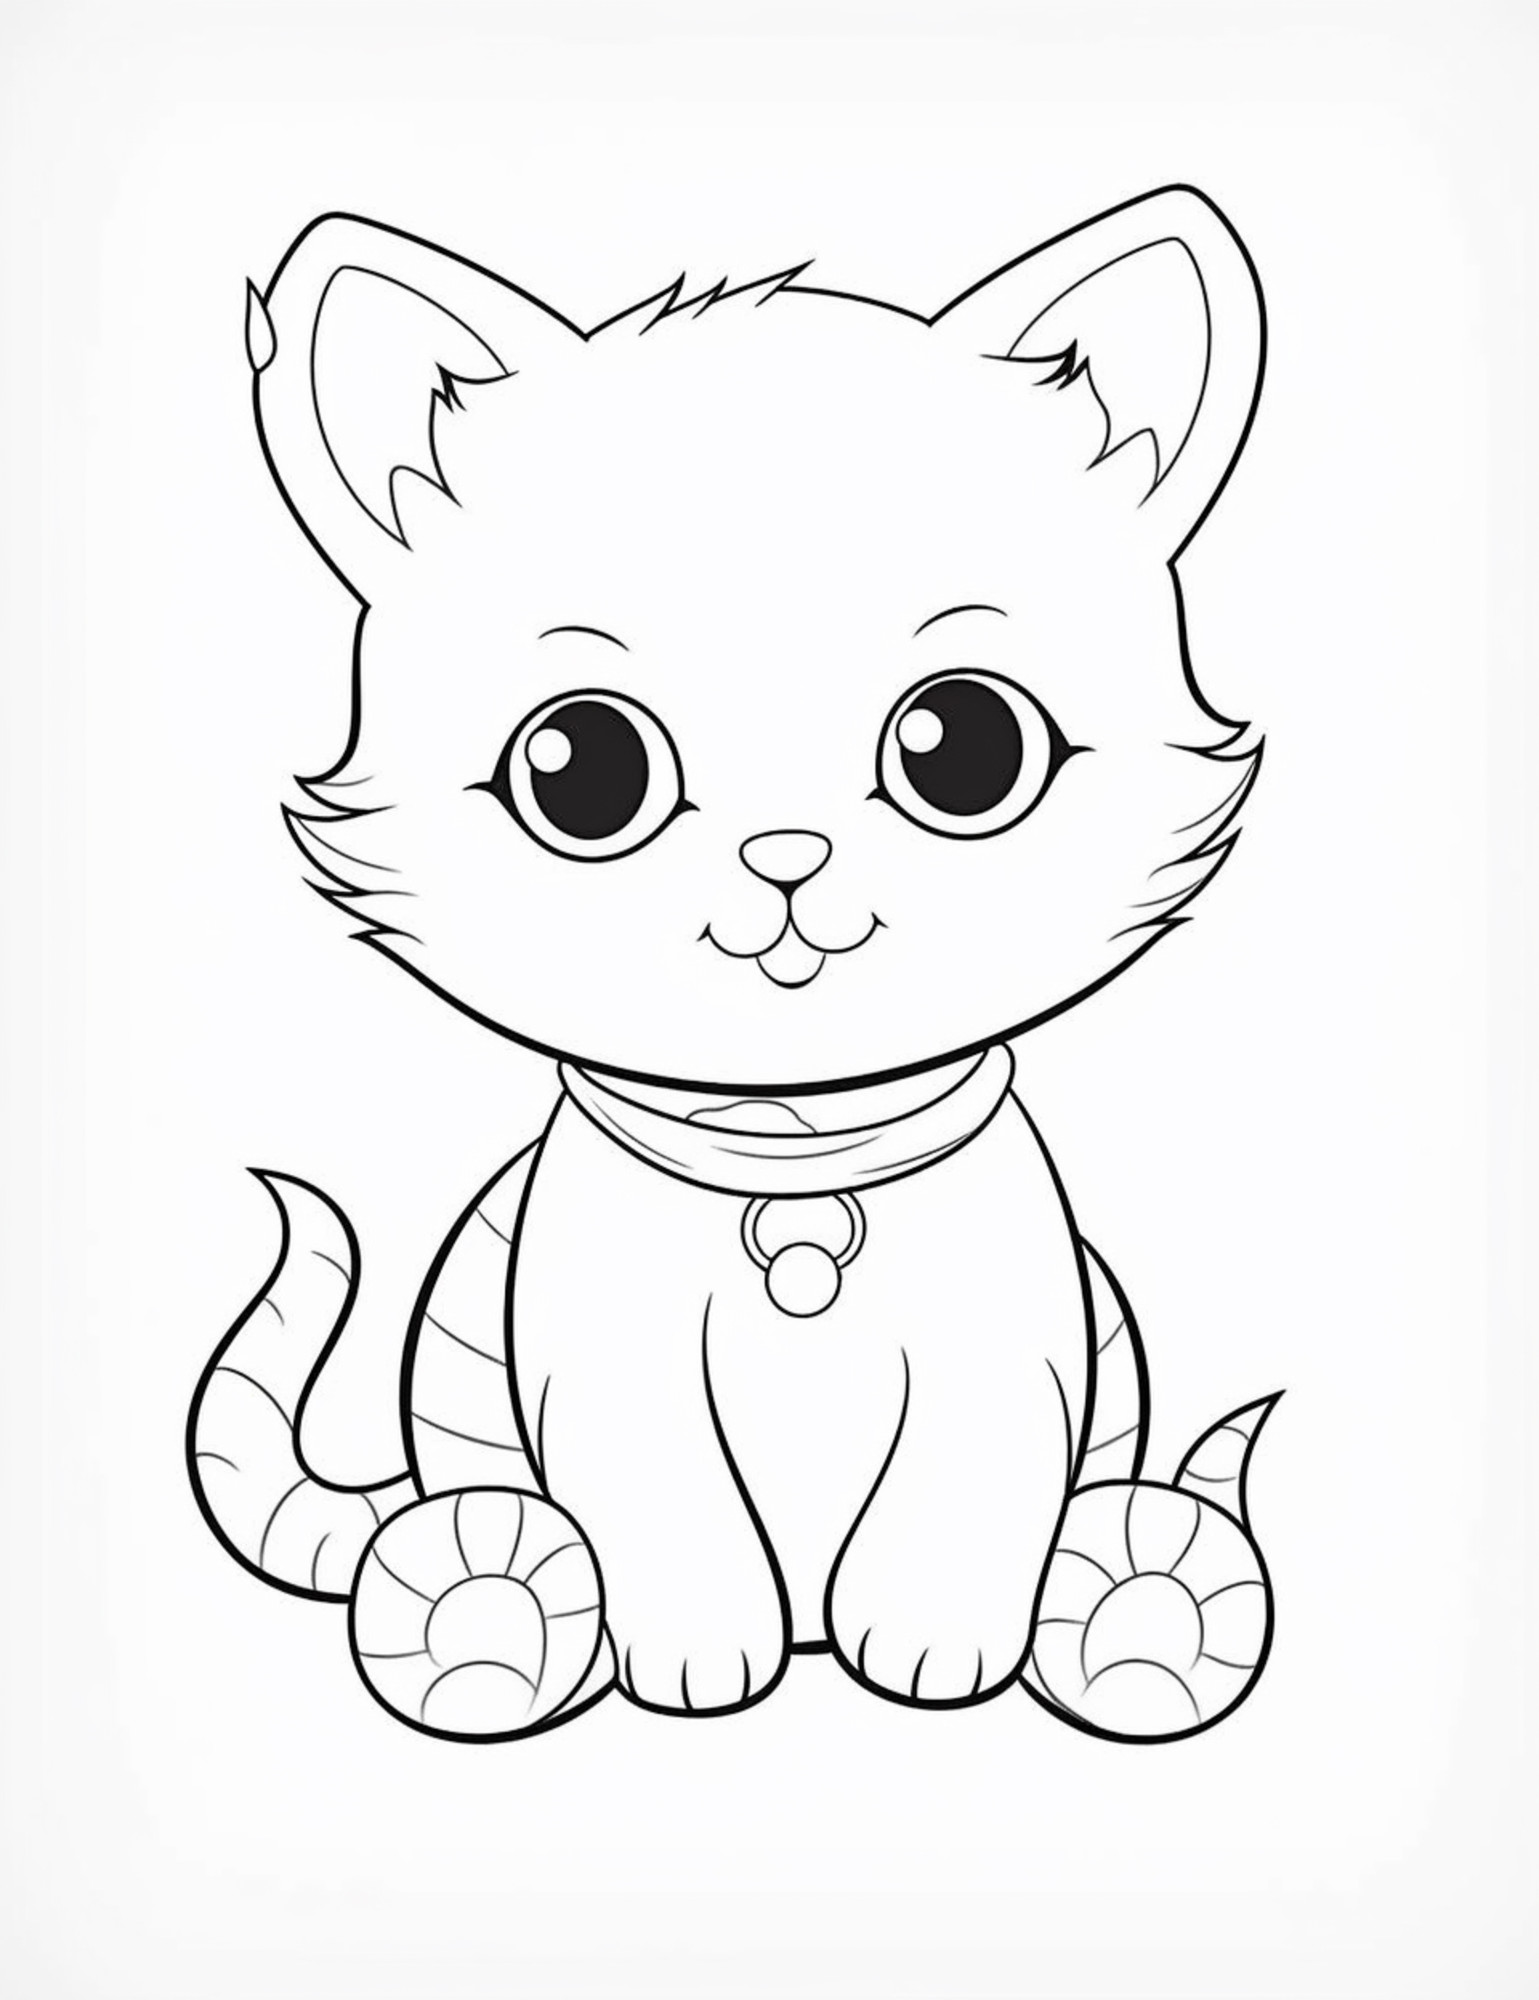 Раскраска для детей: котенок с ошейником